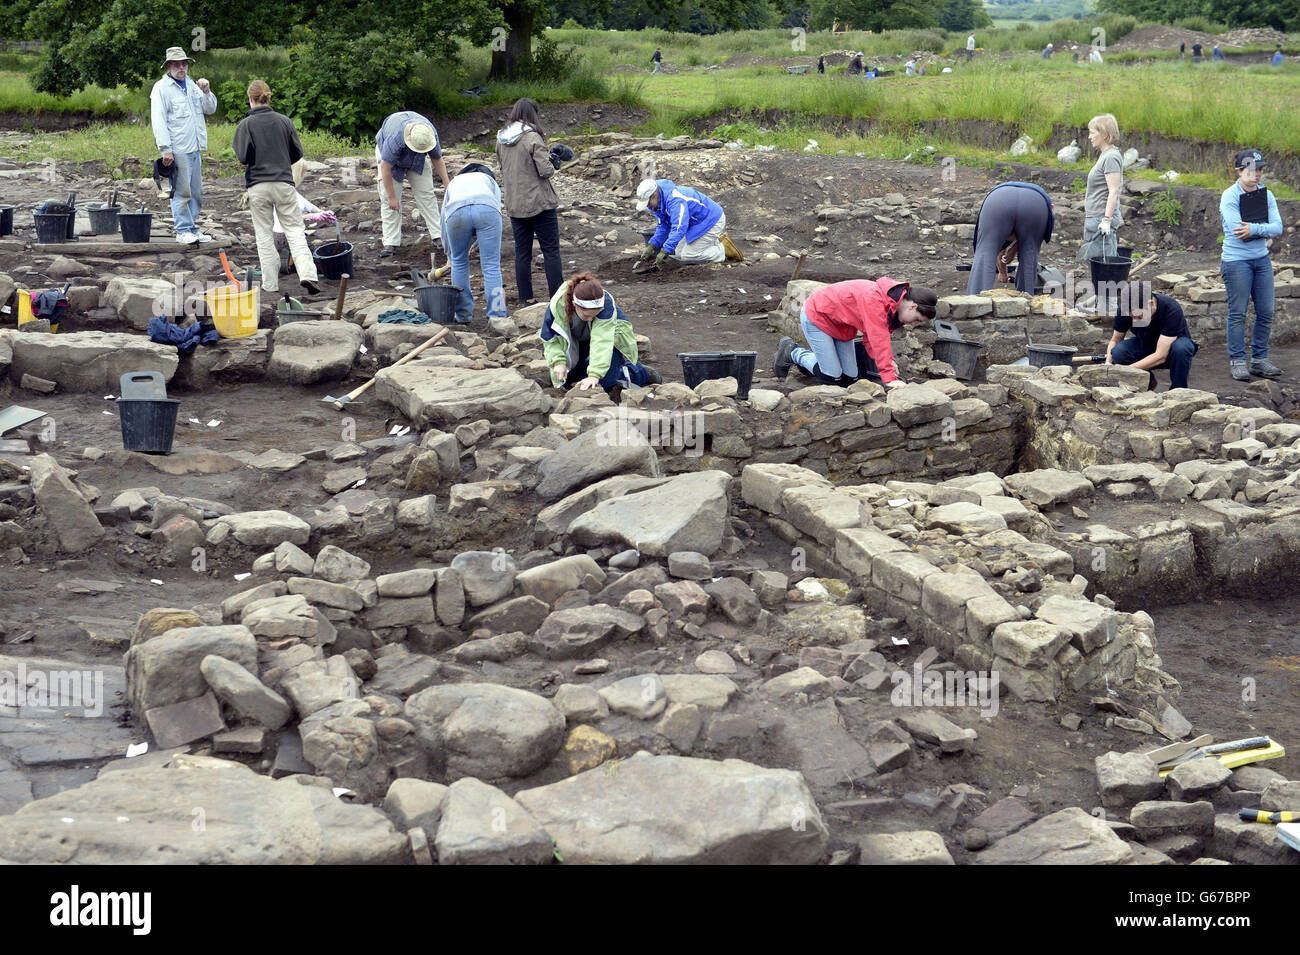 Los estudiantes excavan en el sitio de Binchester Roman Fort, cerca de Bishop Auckland en el condado de Durham, donde una cabeza de piedra tallada de 1,800 años de edad de un posible dios romano georgiano ha sido descubierto enterrado en un antiguo basurero. Foto de stock